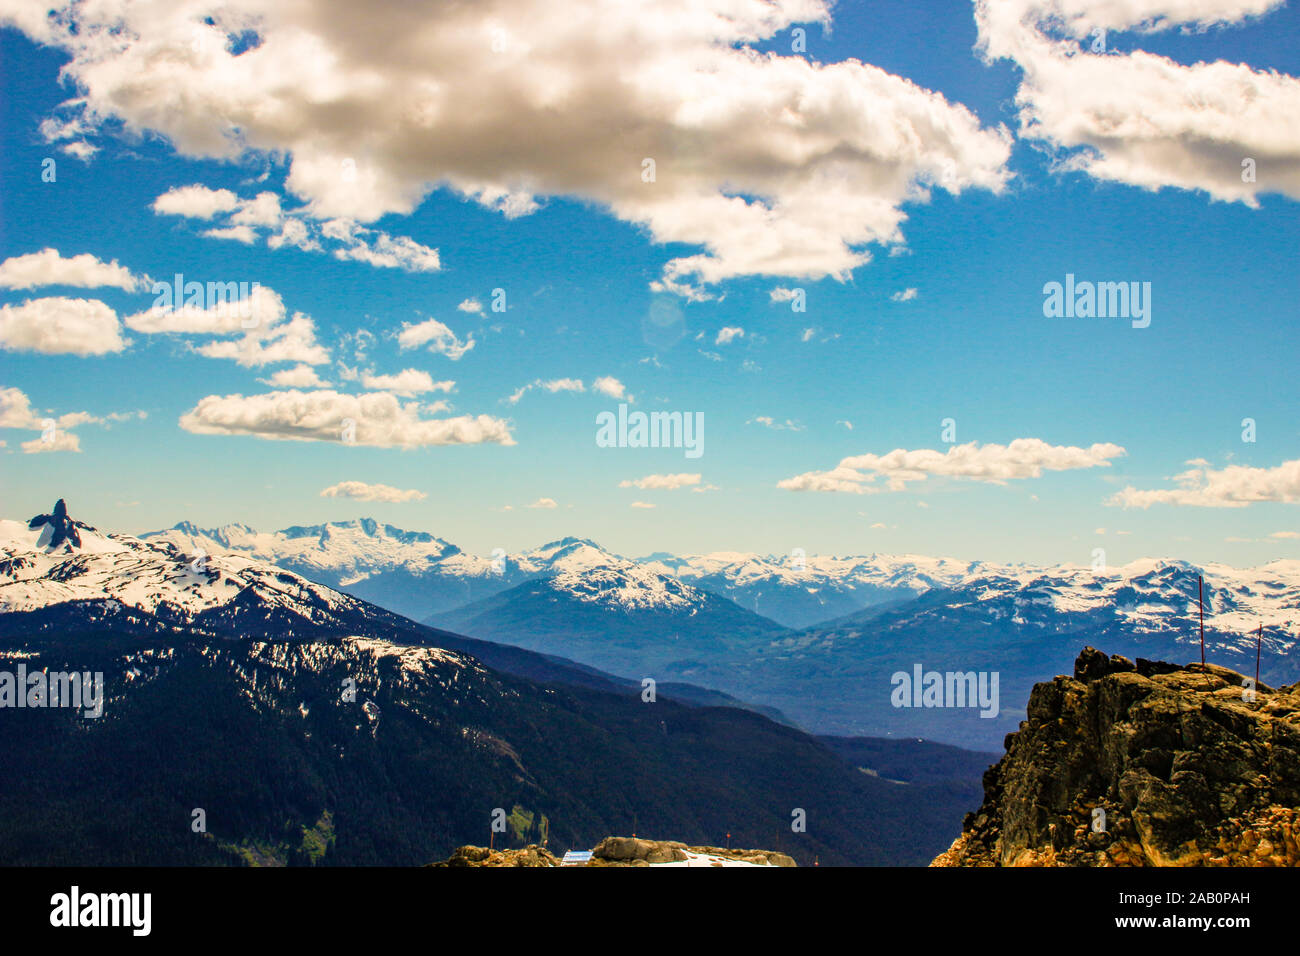 Le sommet du mont Whistler, un jour ensoleillé Banque D'Images